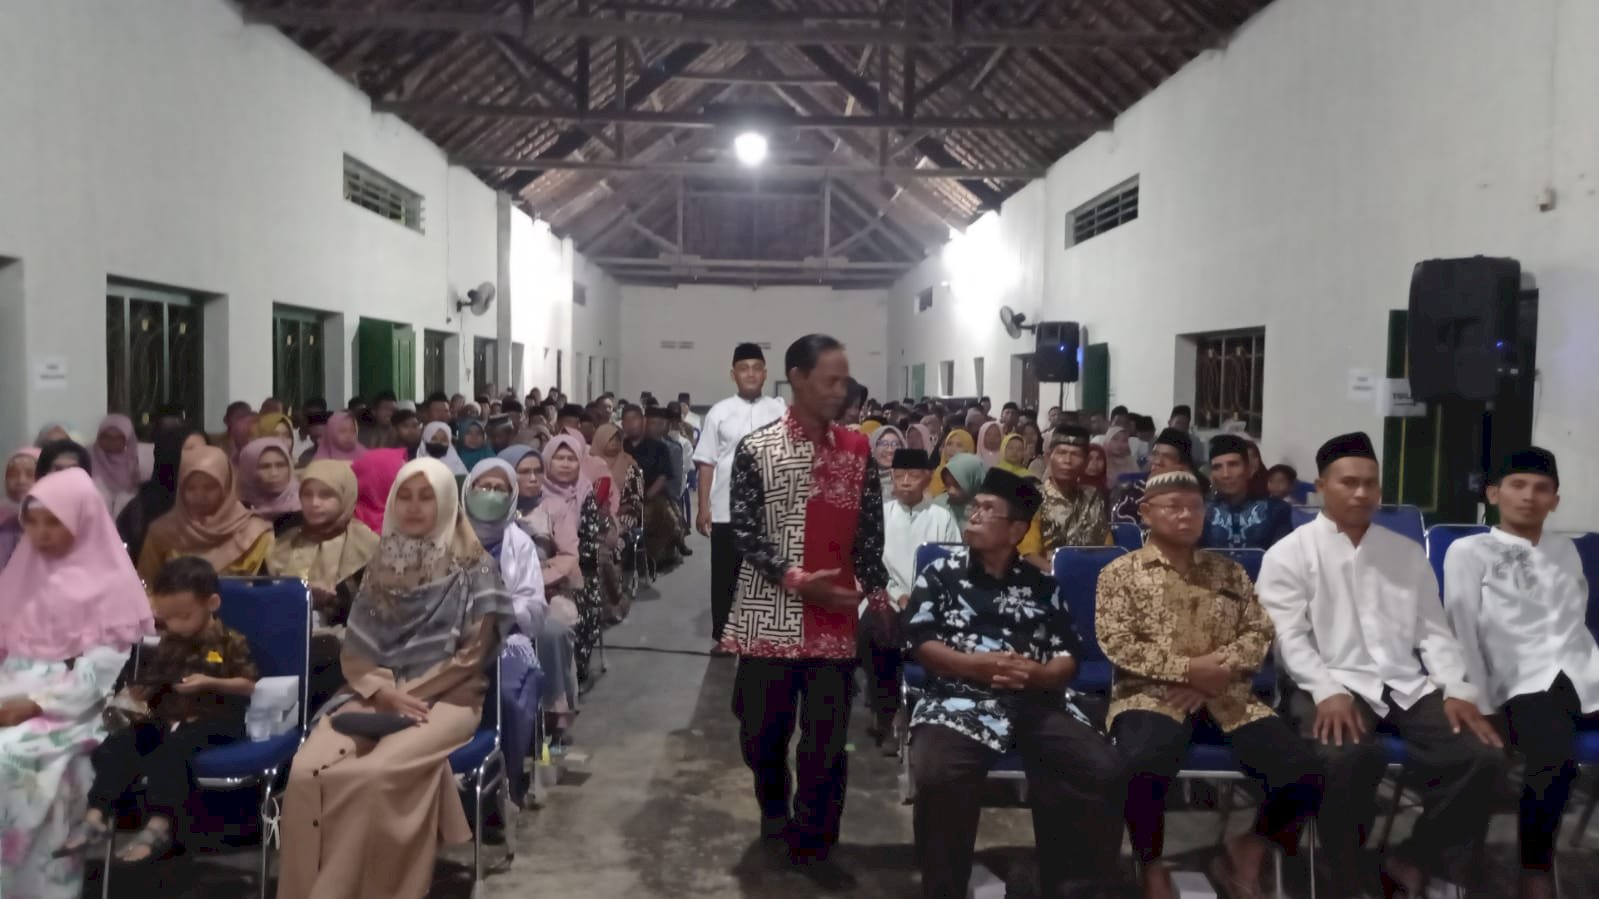 Camat Polanharjo Mengajak Para Tokoh Masyarakat Bersama Membangun Pemeritahan yang Lebih Baik pada Halal Bihalal di Desa Glagahwangi 